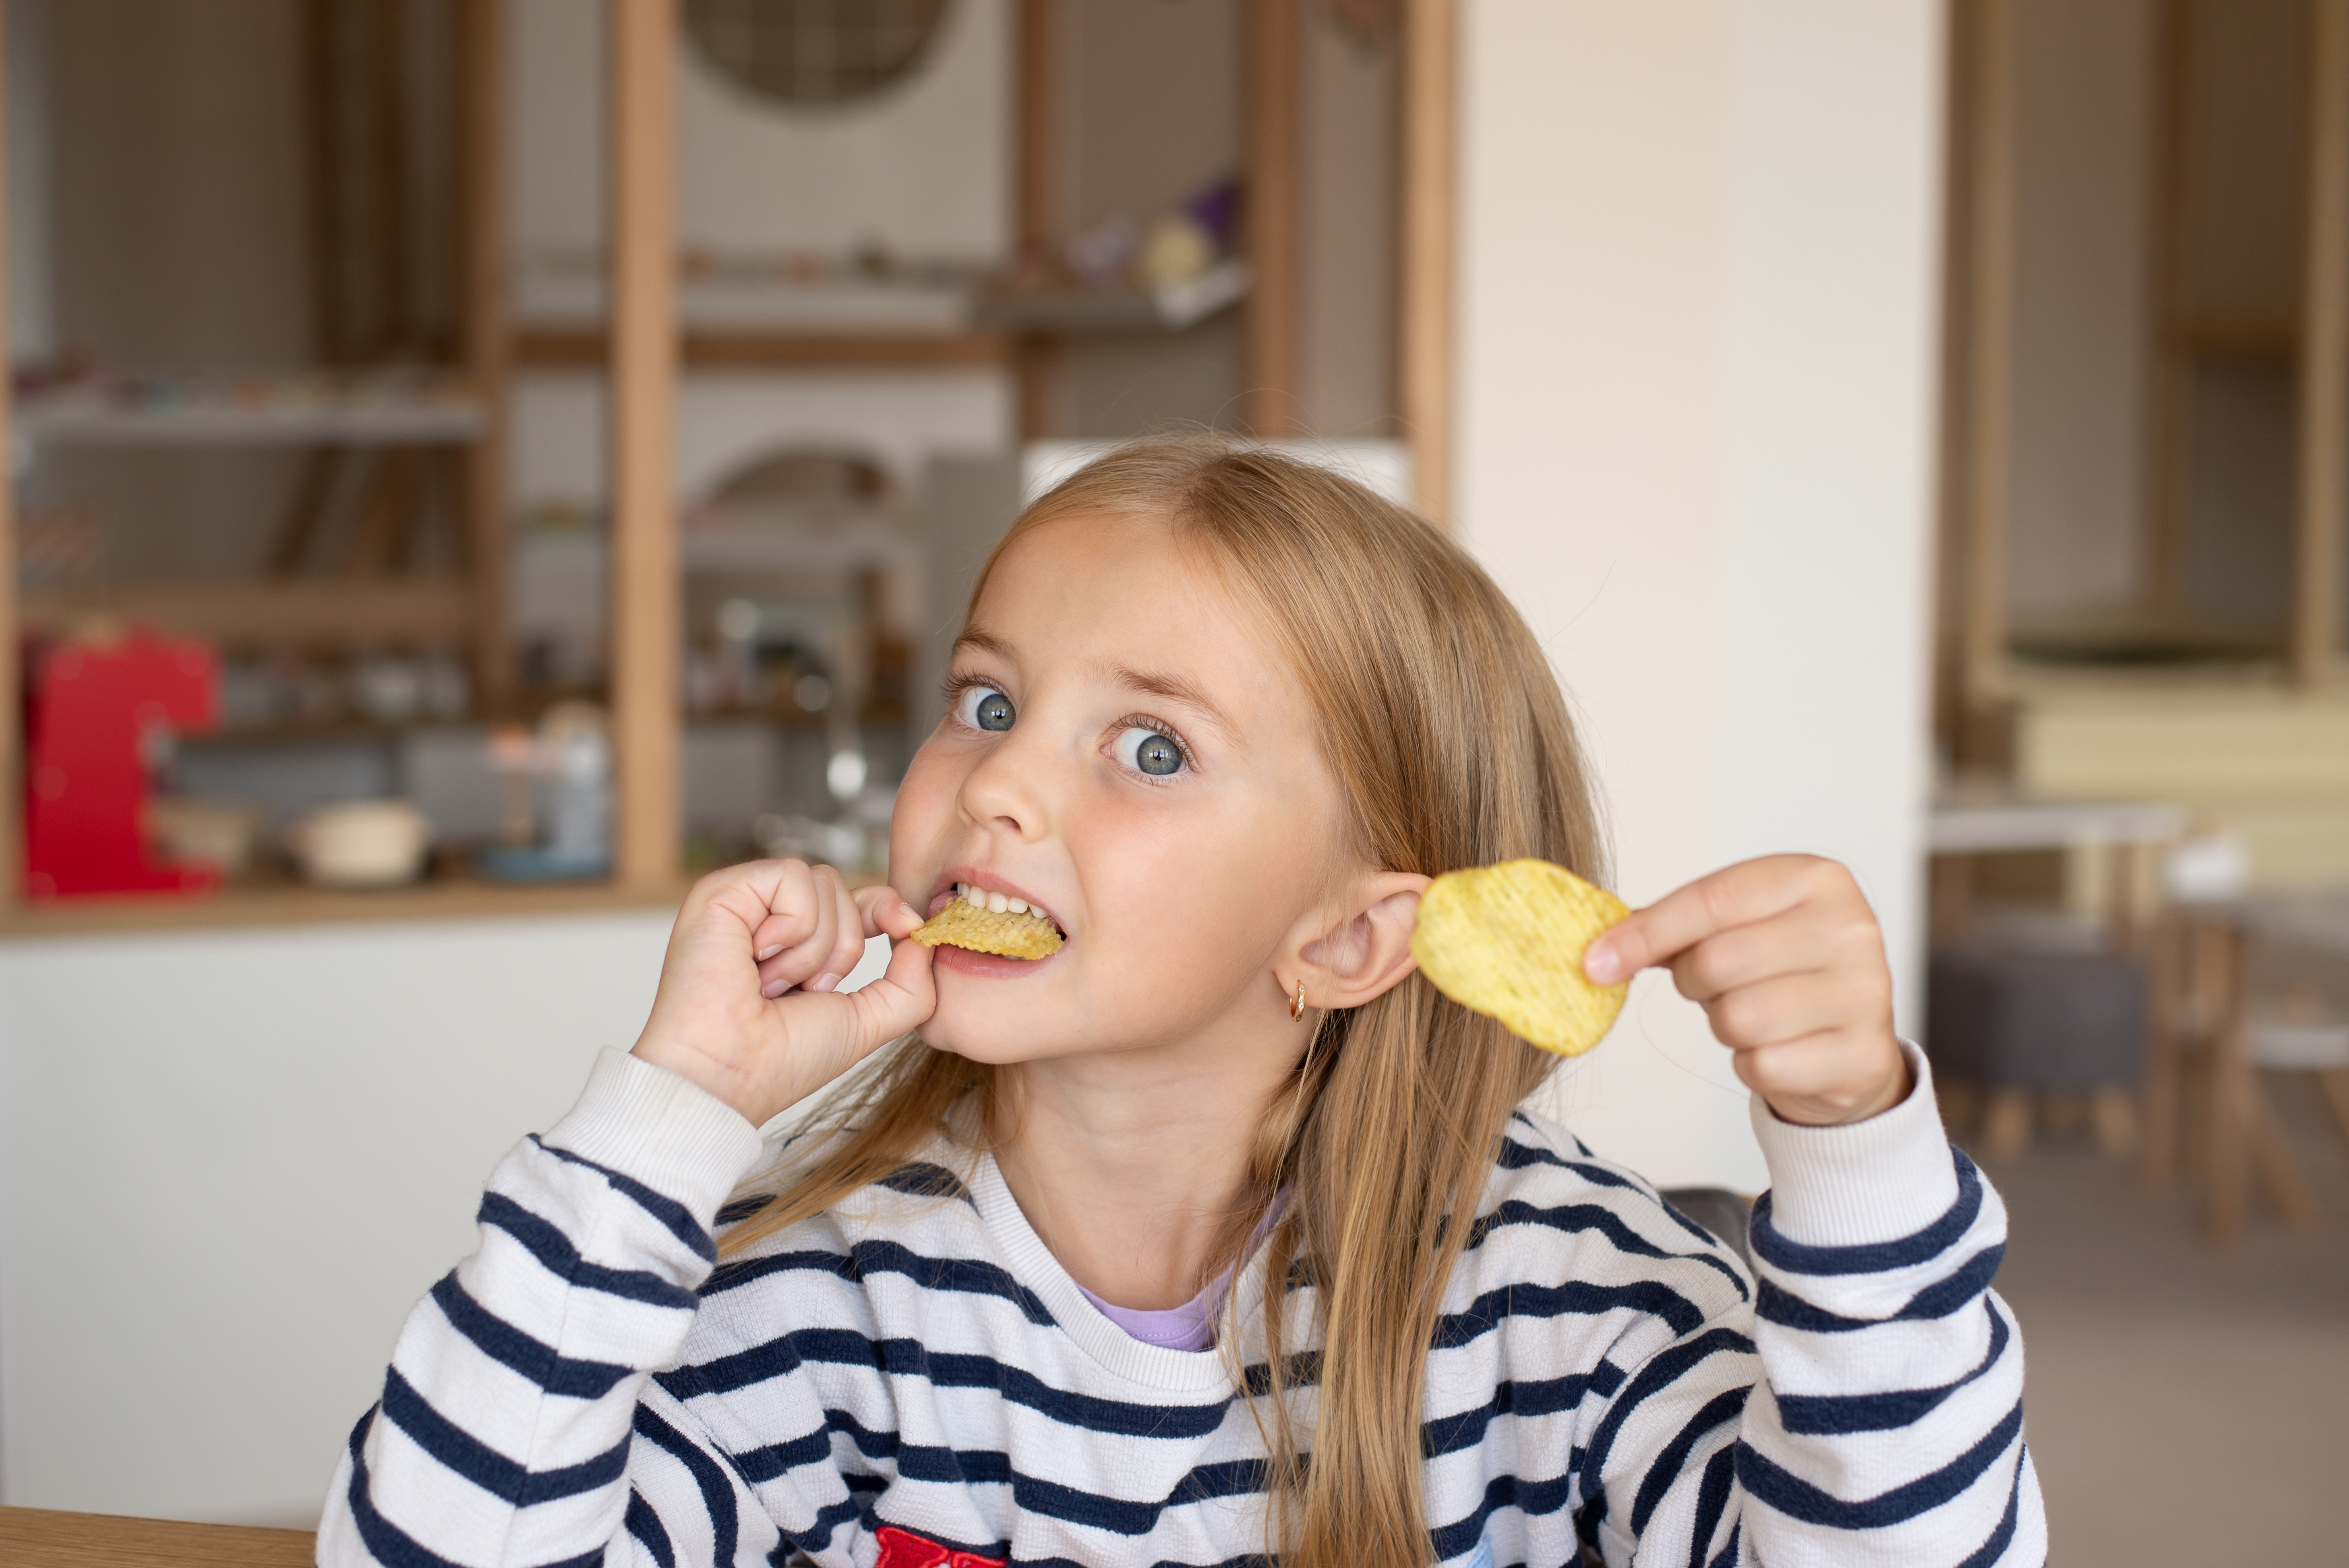 Ein kleines Mädchen, das seine Snacks isst | Quelle: Shutterstock